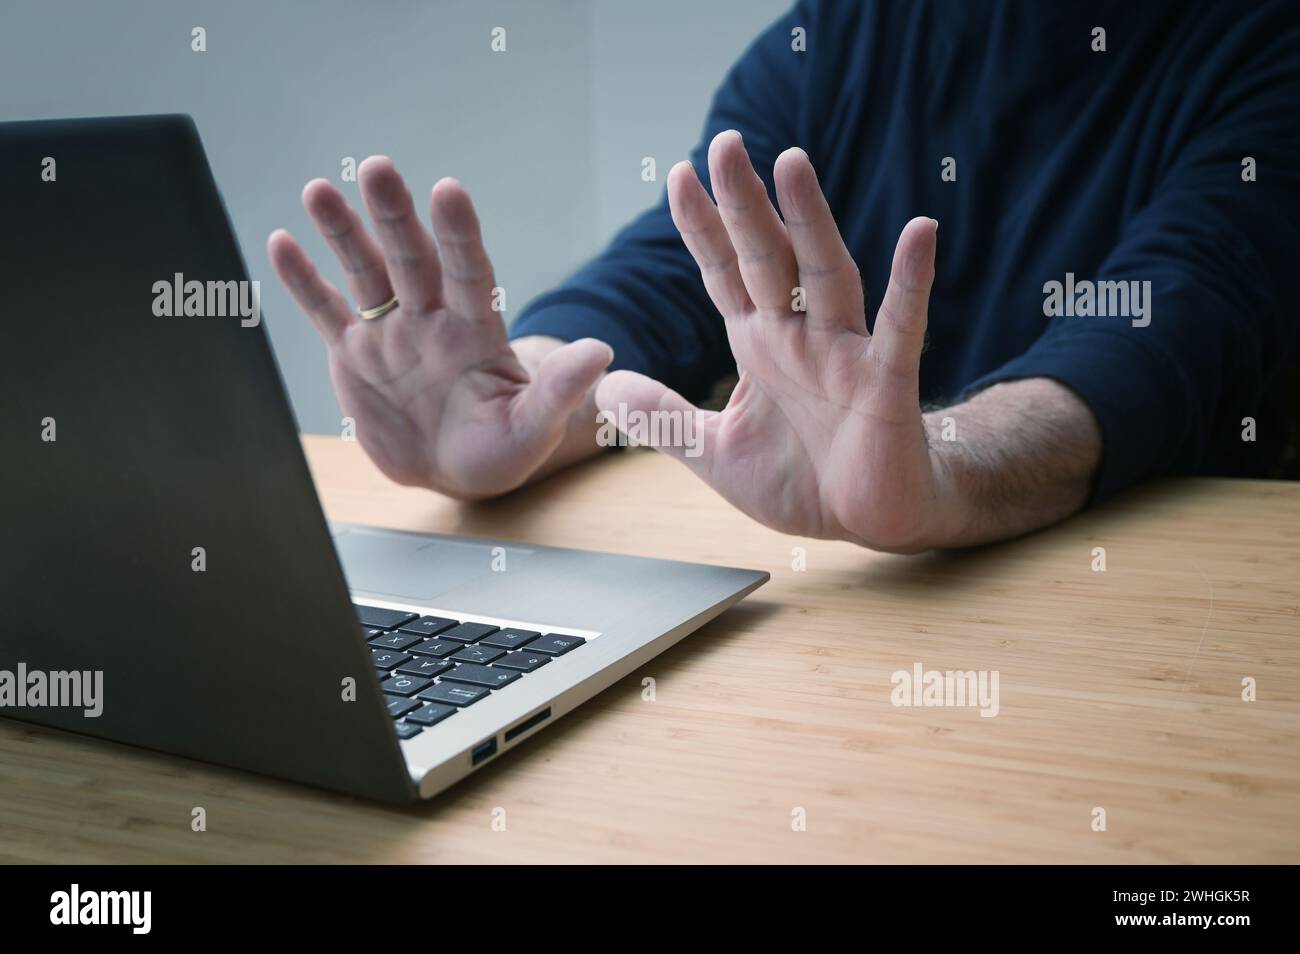 Hände in defensiver Geste gegen einen Laptop, um weitere Arbeiten an einem gehackten System oder andere Gefahren und Beleidigungen zu vermeiden Stockfoto